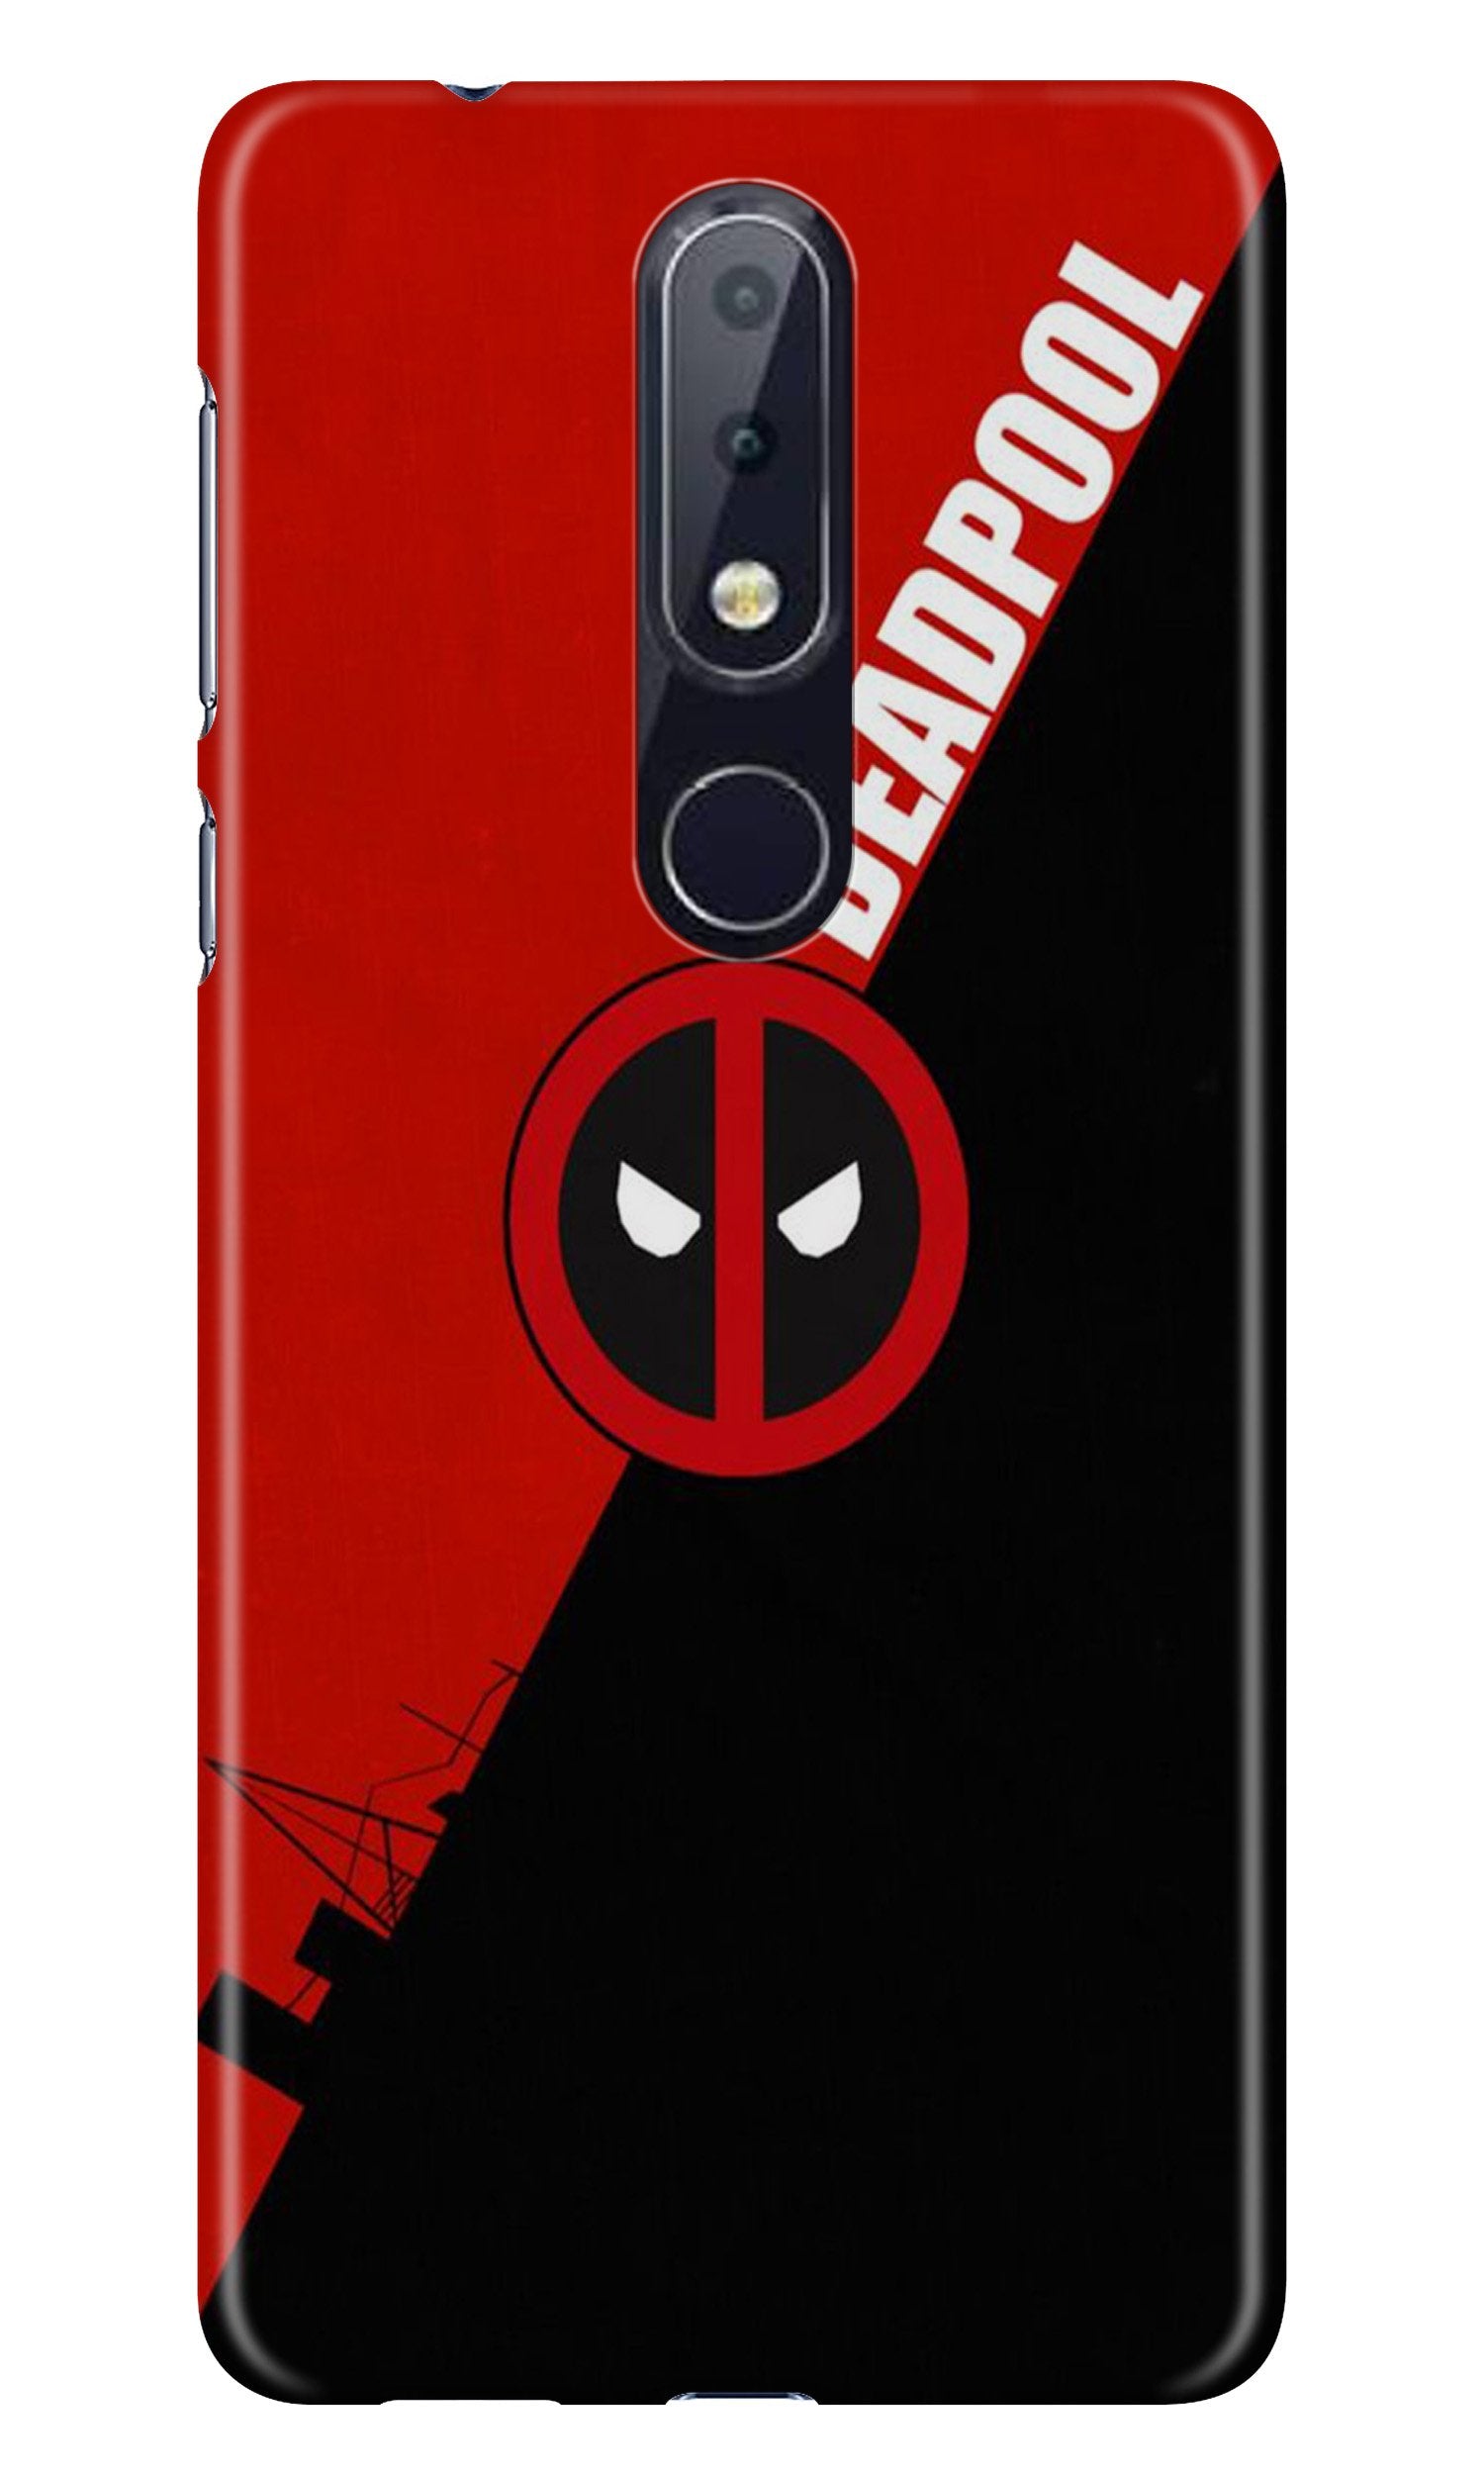 Deadpool Case for Nokia 4.2 (Design No. 248)